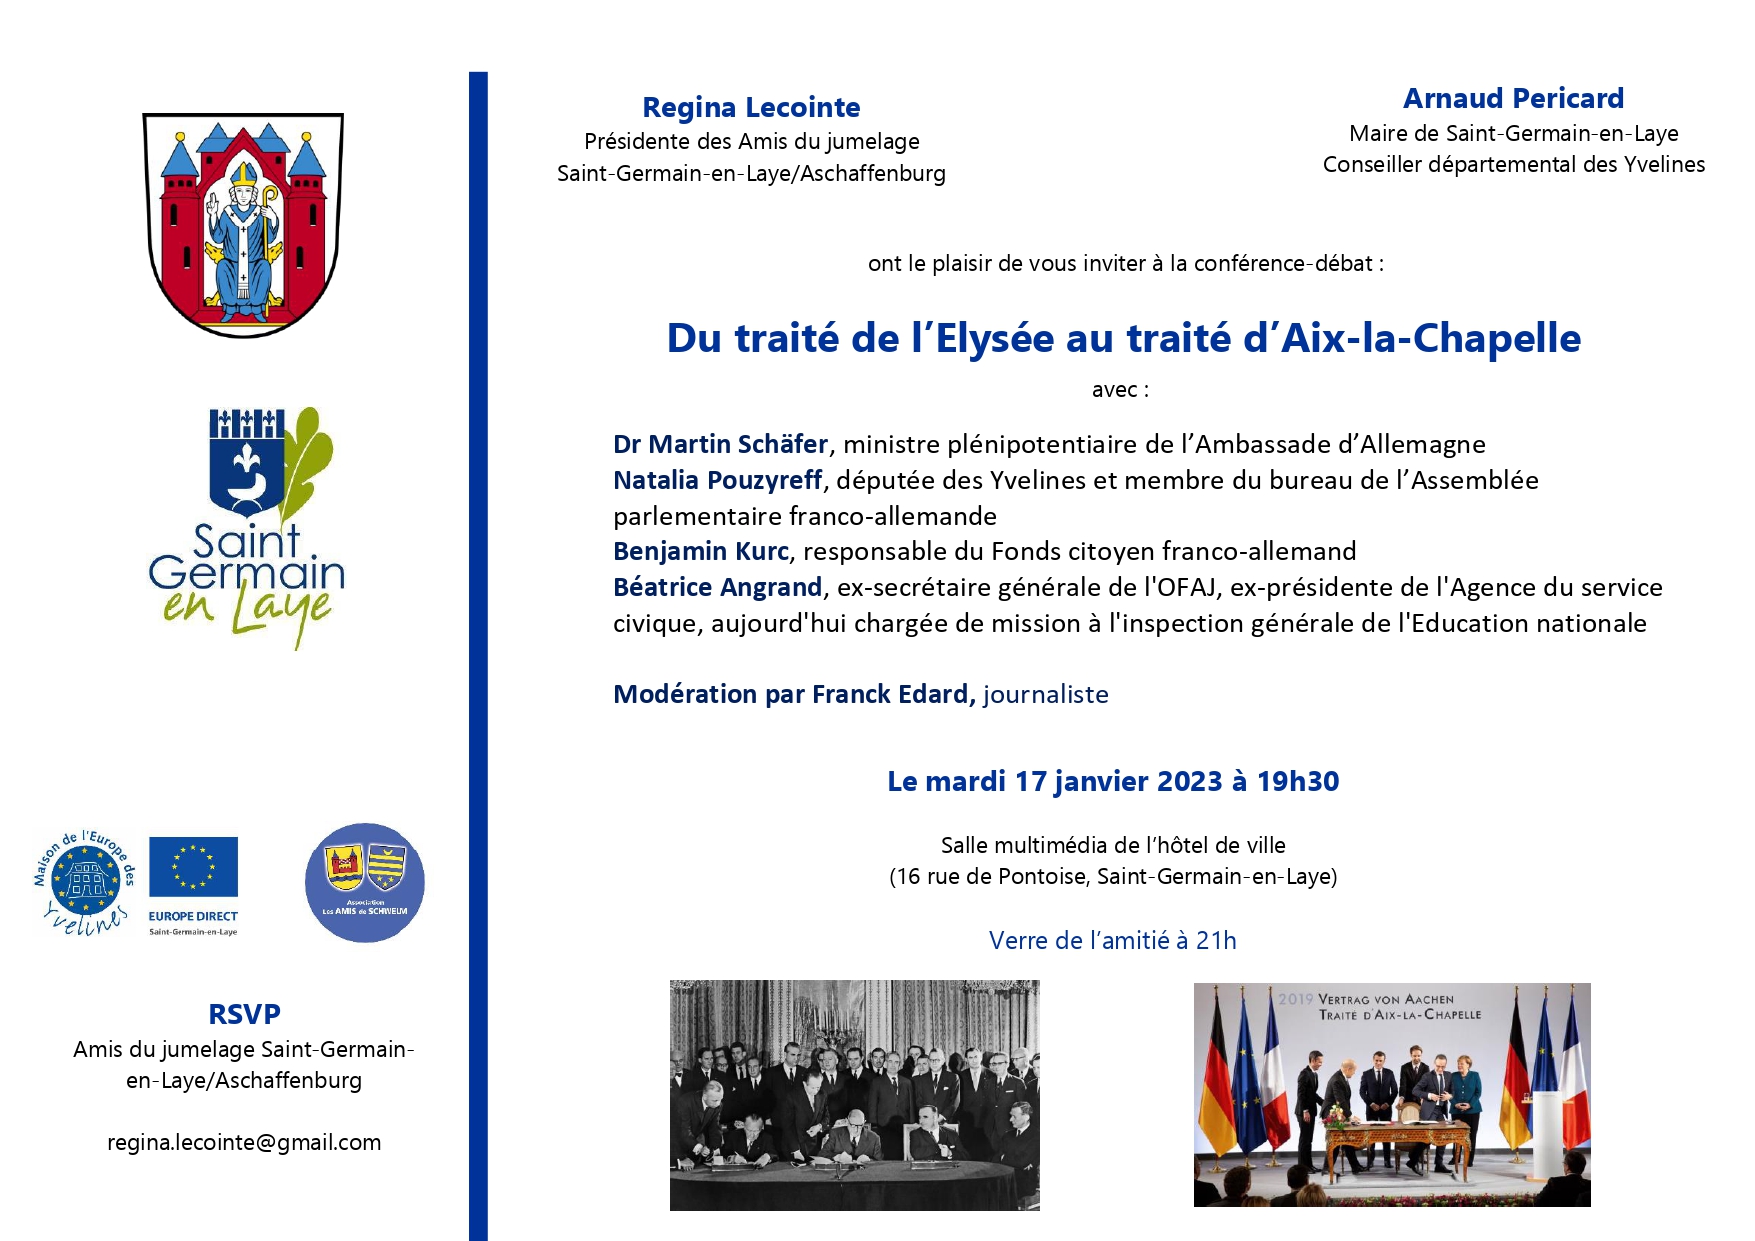 conférence-débat "Du traité de l'Élysée au traité d'Aix-la-Chapelle